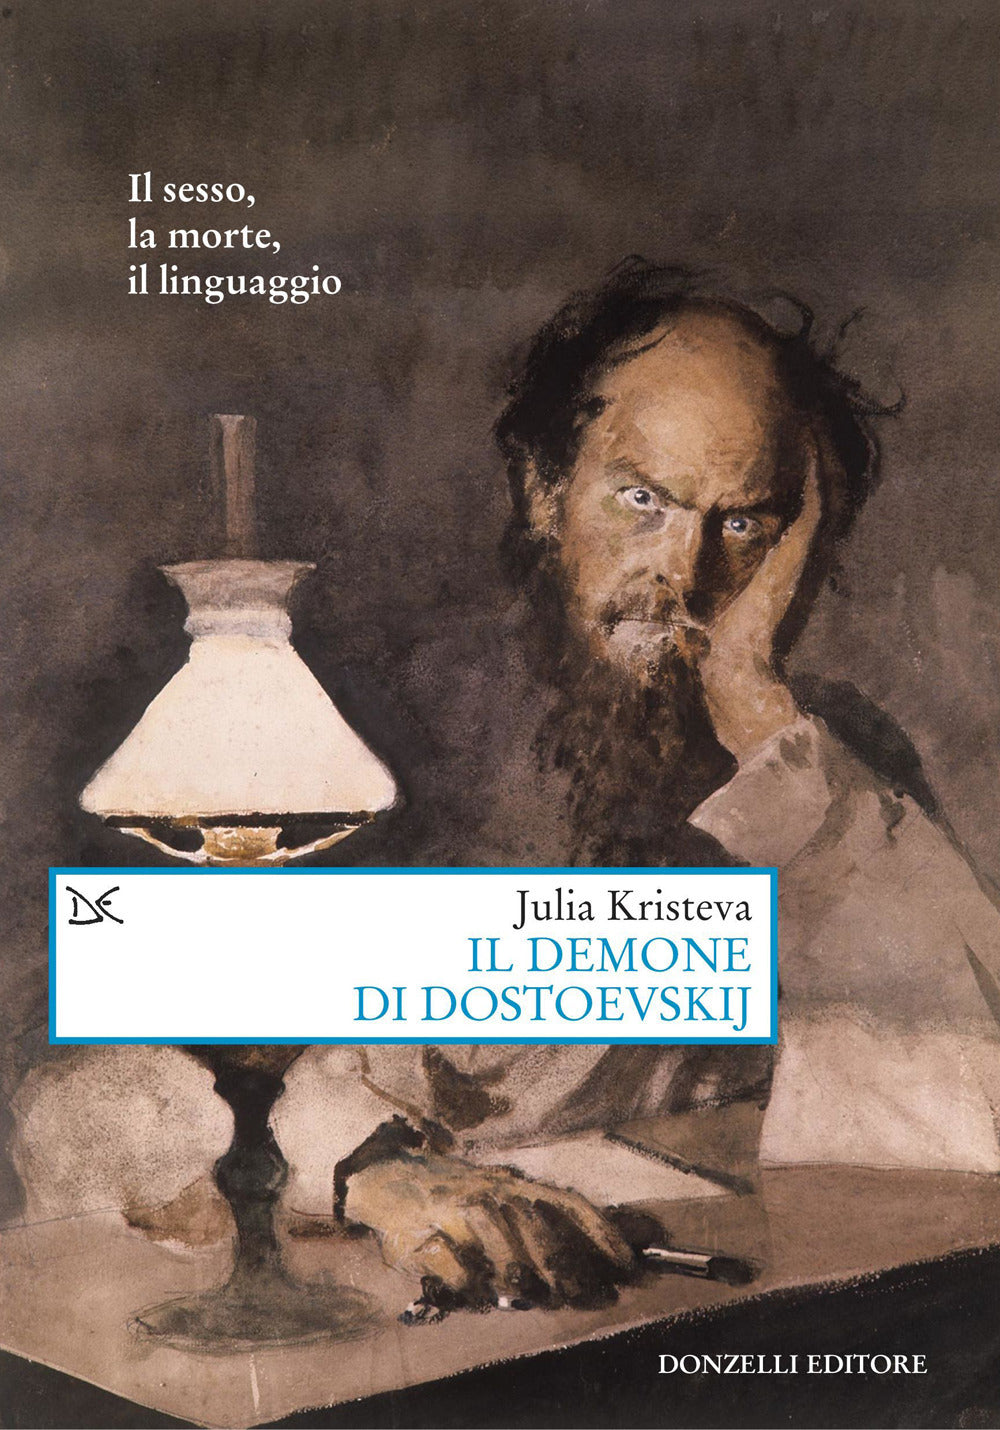 Il demone di Dostoevskij. Il sesso, la morte, il linguaggio.